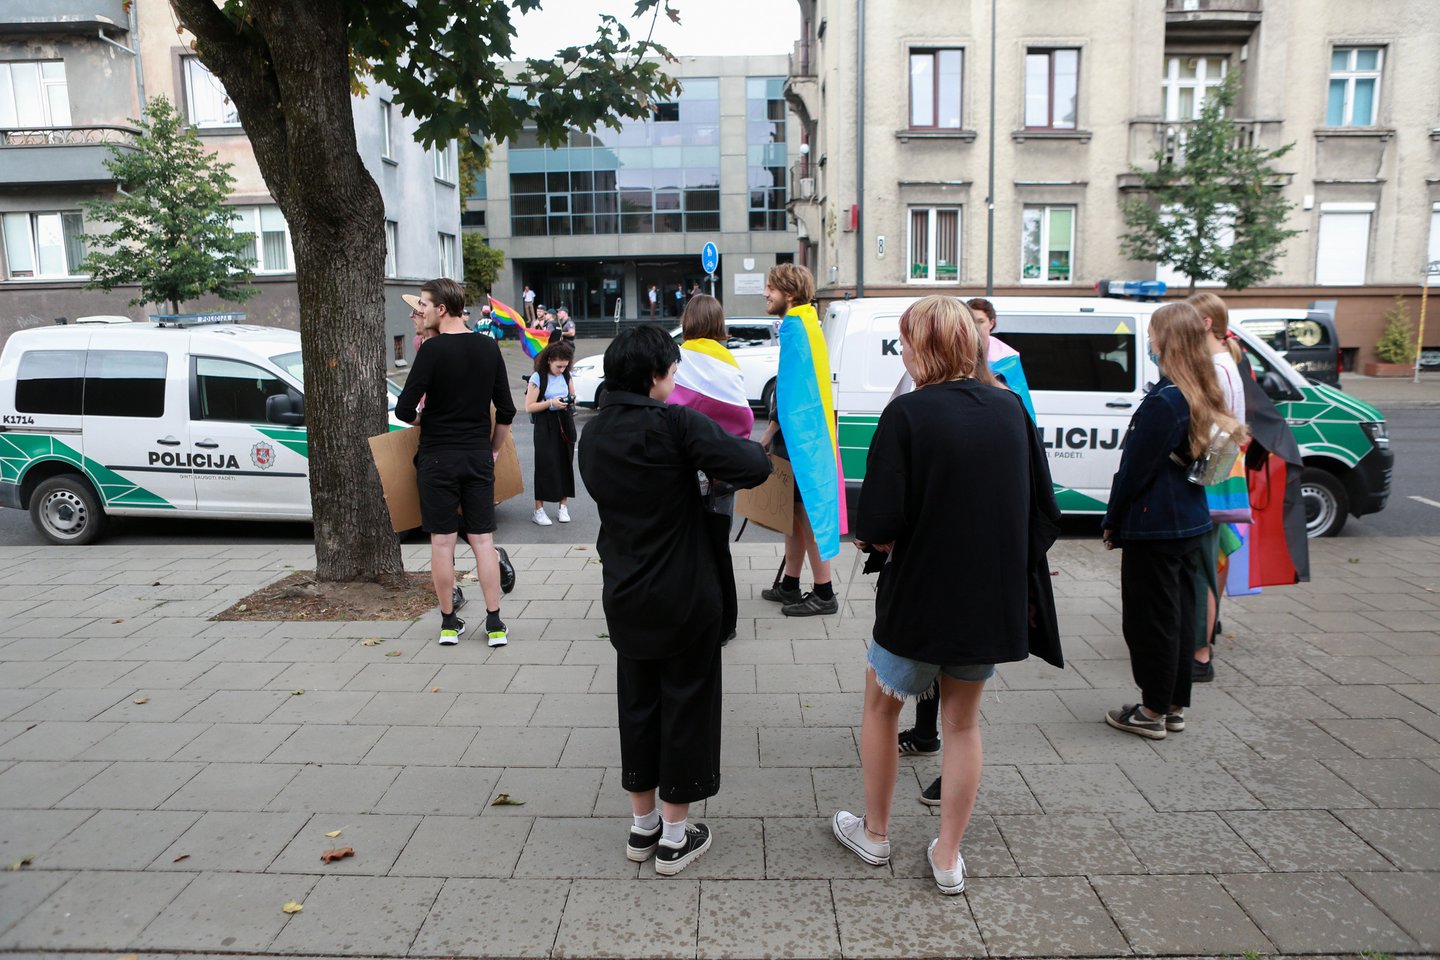  LGBT rėmėjai susirinko prie teismo rūmų. <br>G.Bitvinsko nuotr.